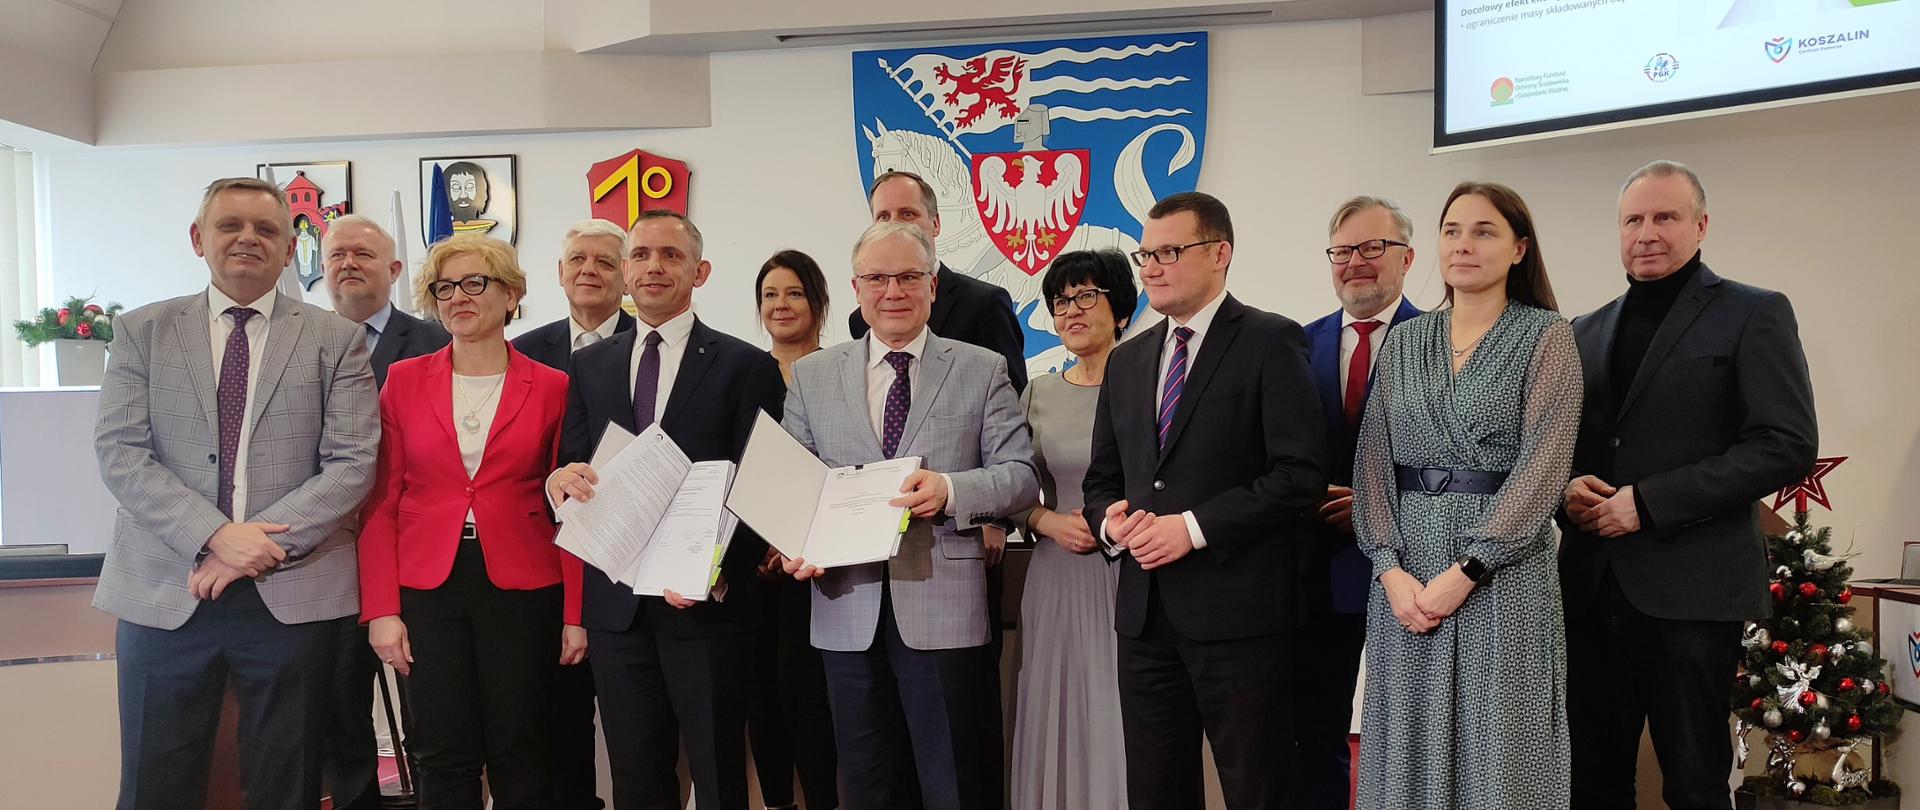 Paweł Mirowski, zastępca prezesa zarządu NFOŚiGW zdjęcie grupowe podczas uroczystego podpisania umowy w Koszalinie.